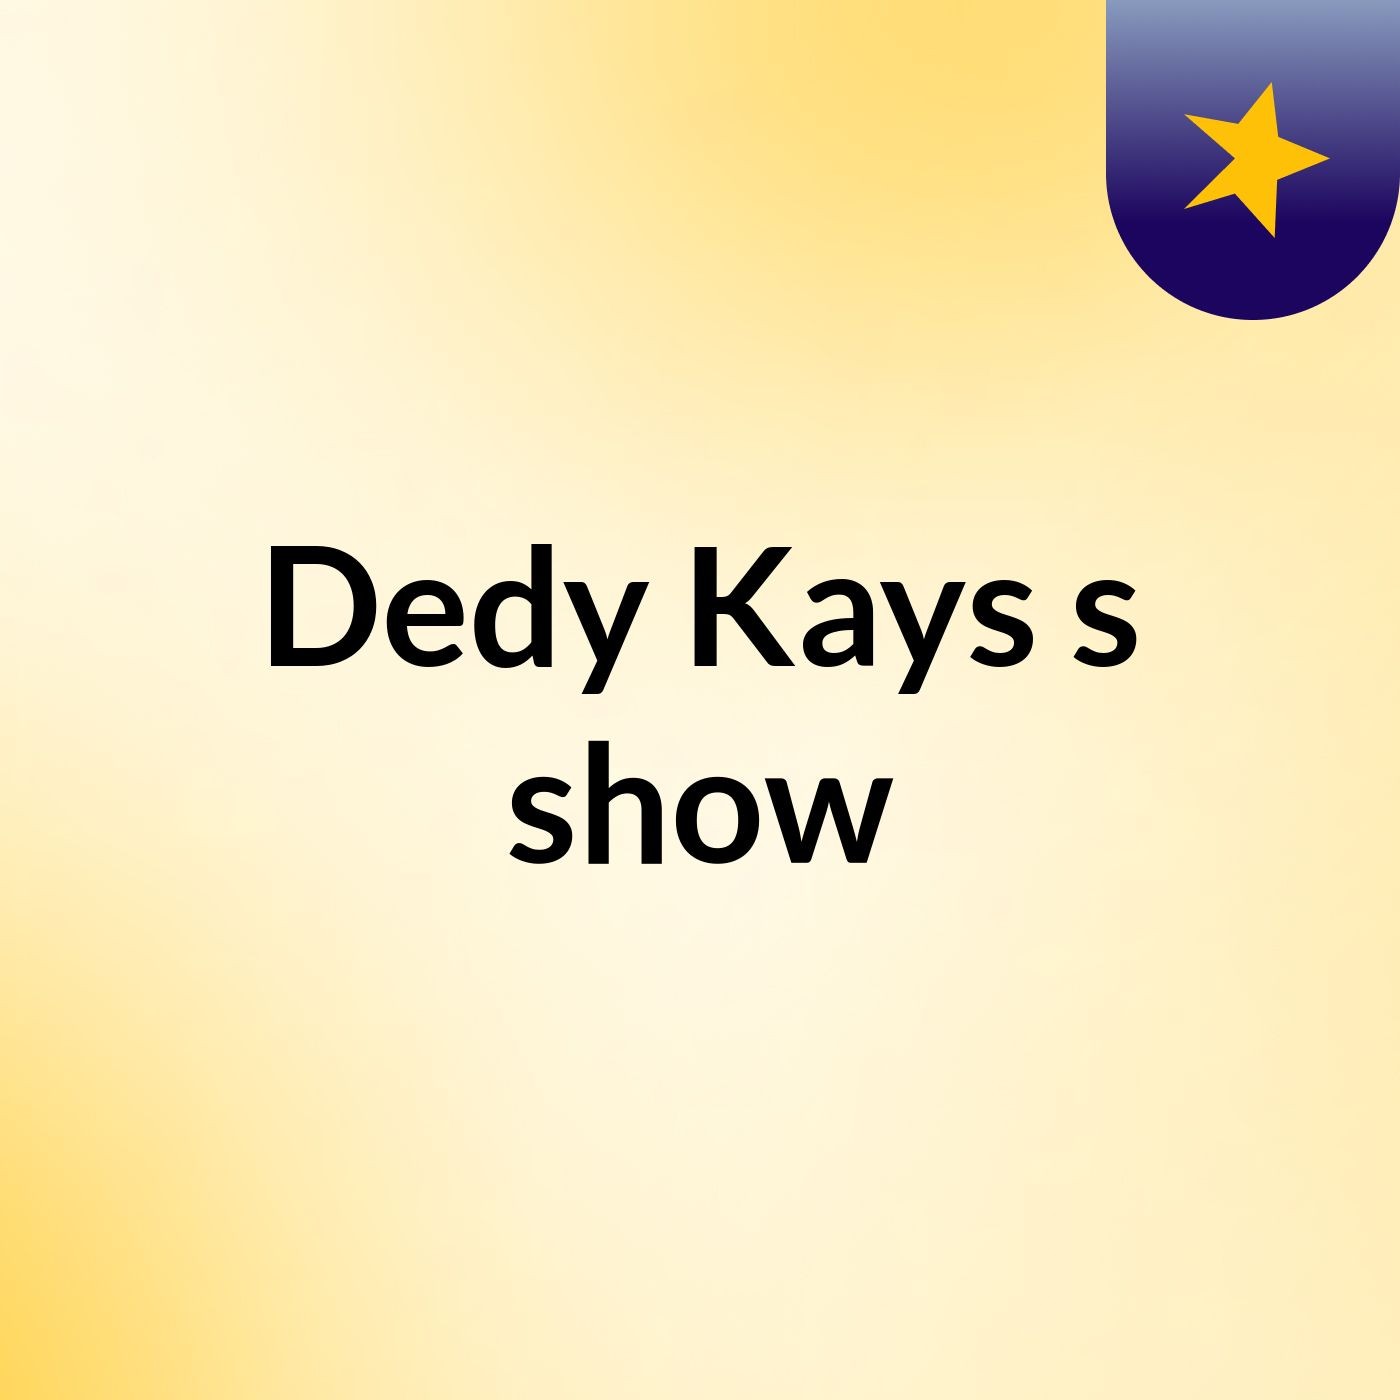 Dedy Kays's show